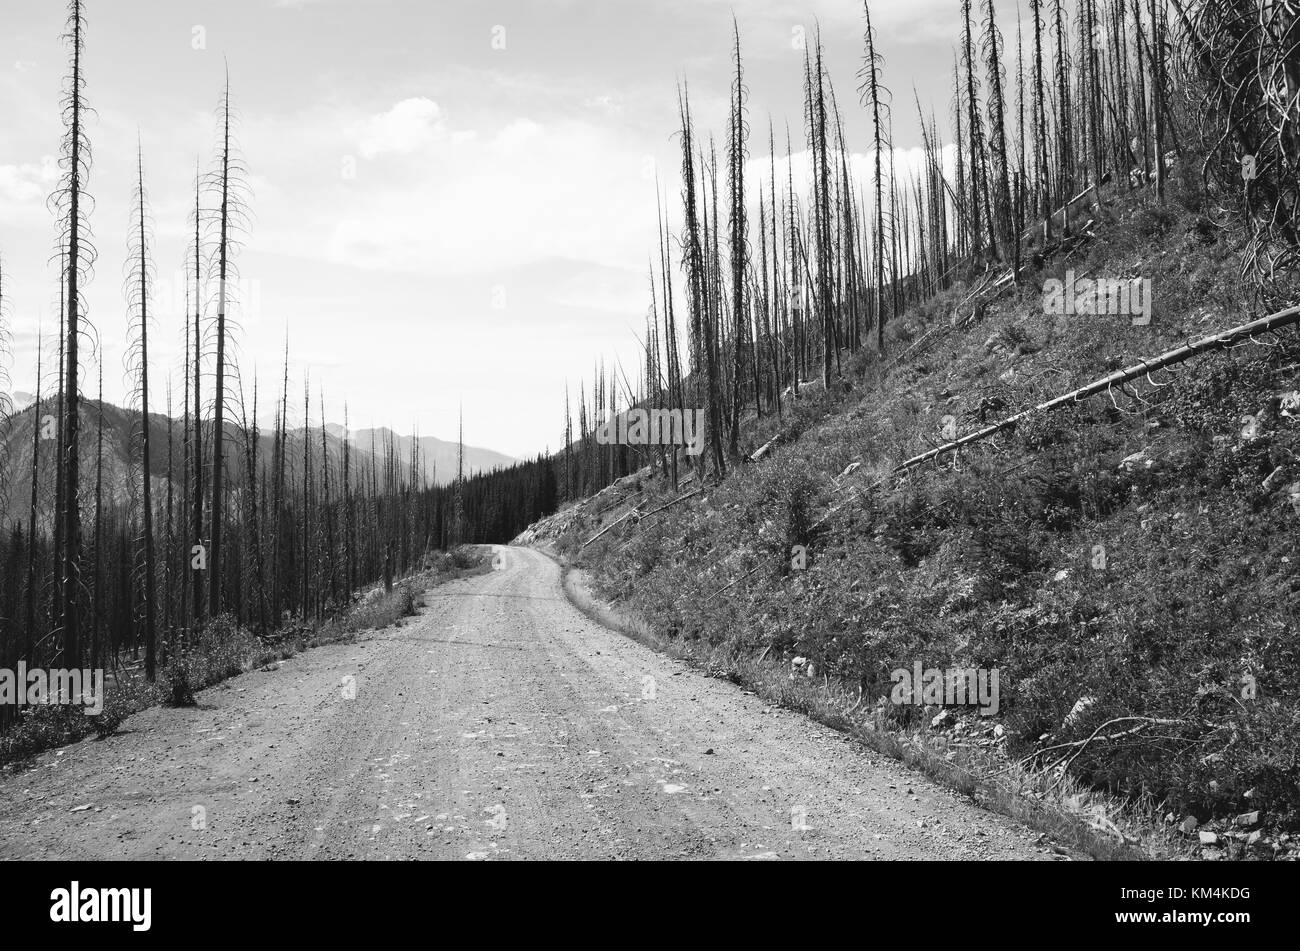 Route à travers de vastes forêts endommagées d'incendie de forêt près de harts pass, pasayten wilderness, Washington. Banque D'Images